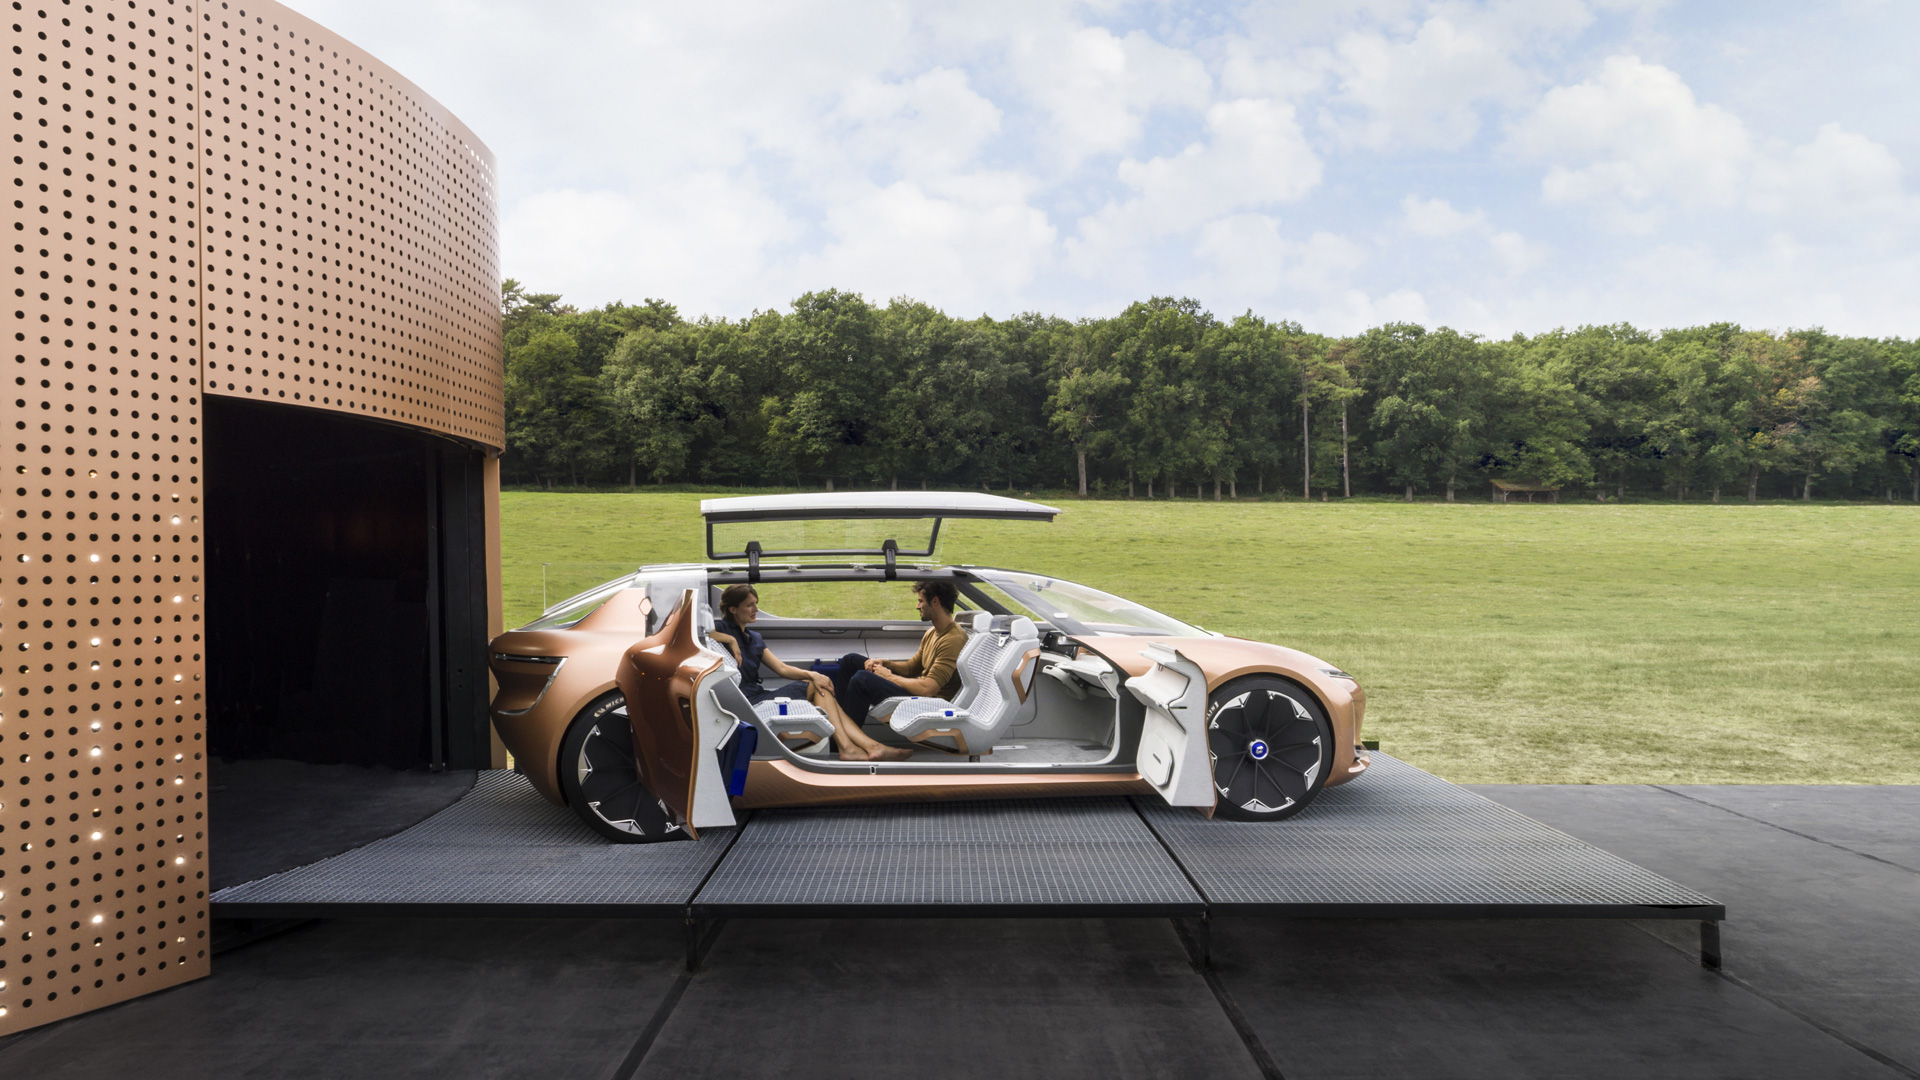 Renault SYMBIOZ – Uma visão do futuro